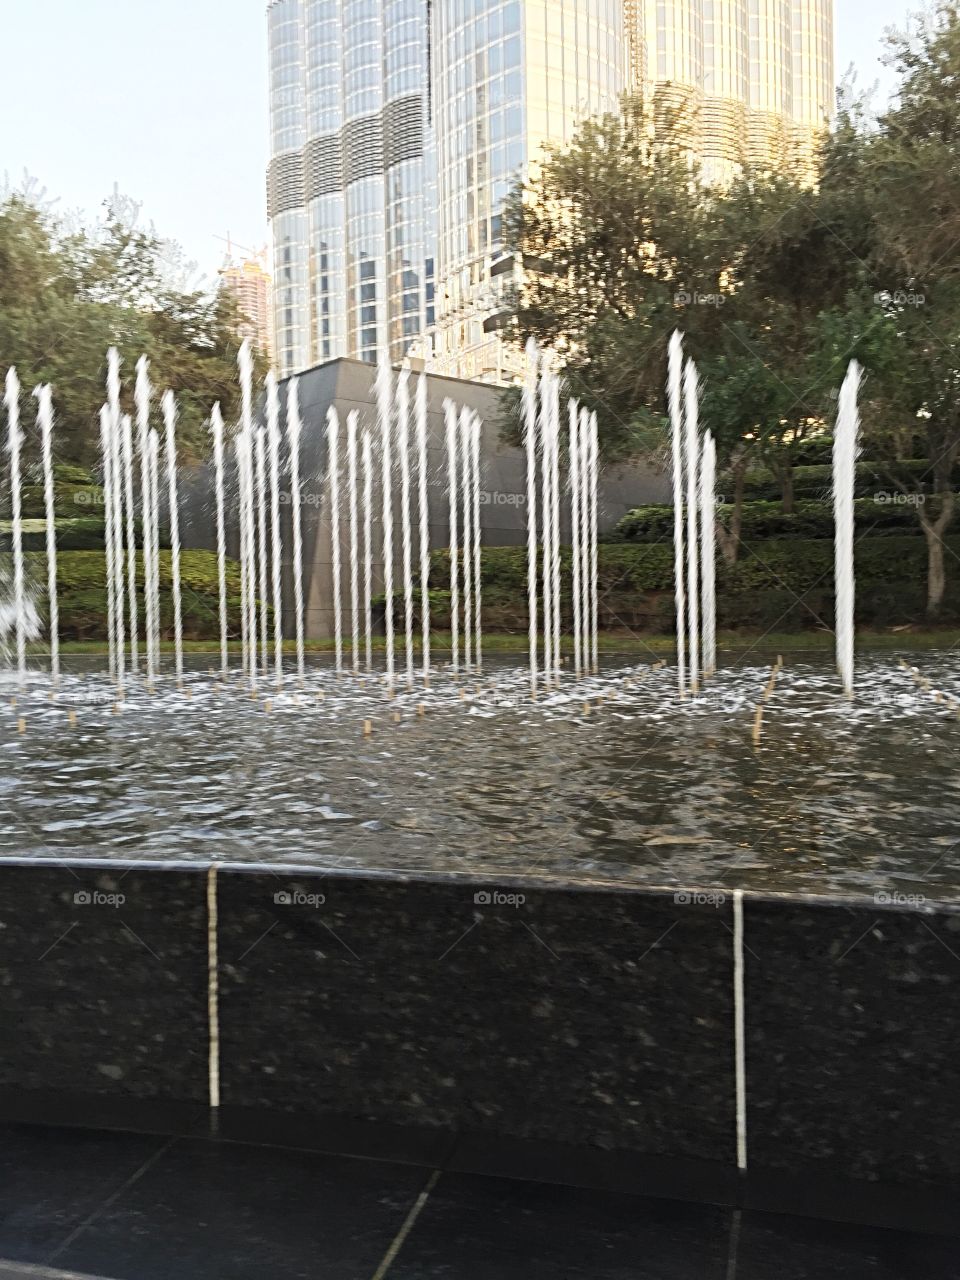 Water fountains in Dubai 